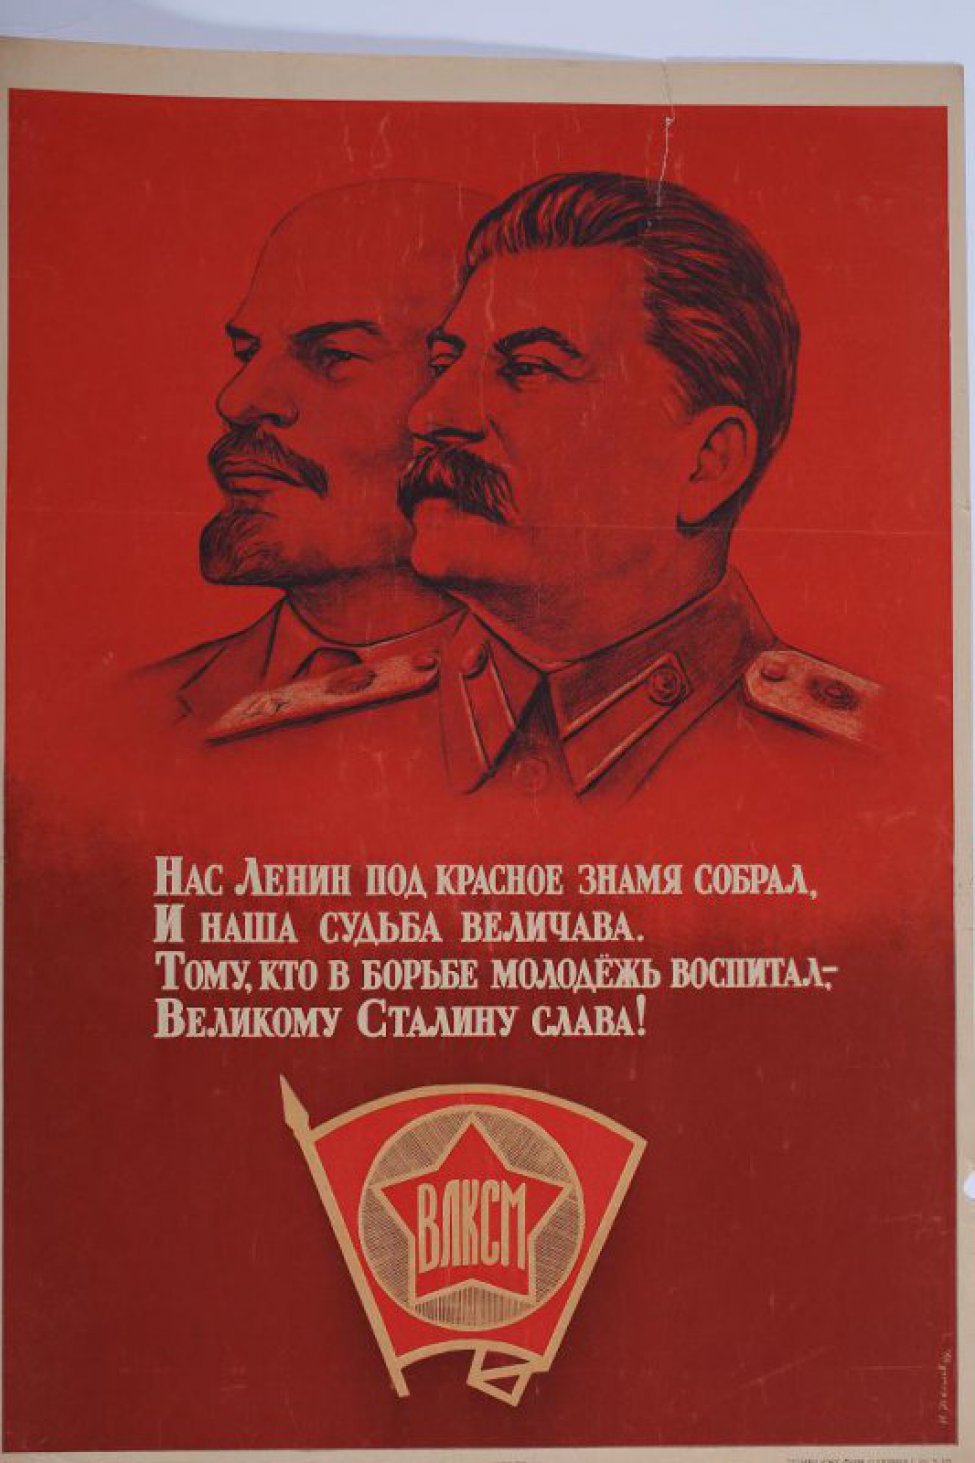 Изображены вверху на красном фоне портреты Ленина и  Сталина. Внизу - комсомольский значек, а между ними текст: "Нас Ленин под красное знамя собрал, и наша судьба величава!"